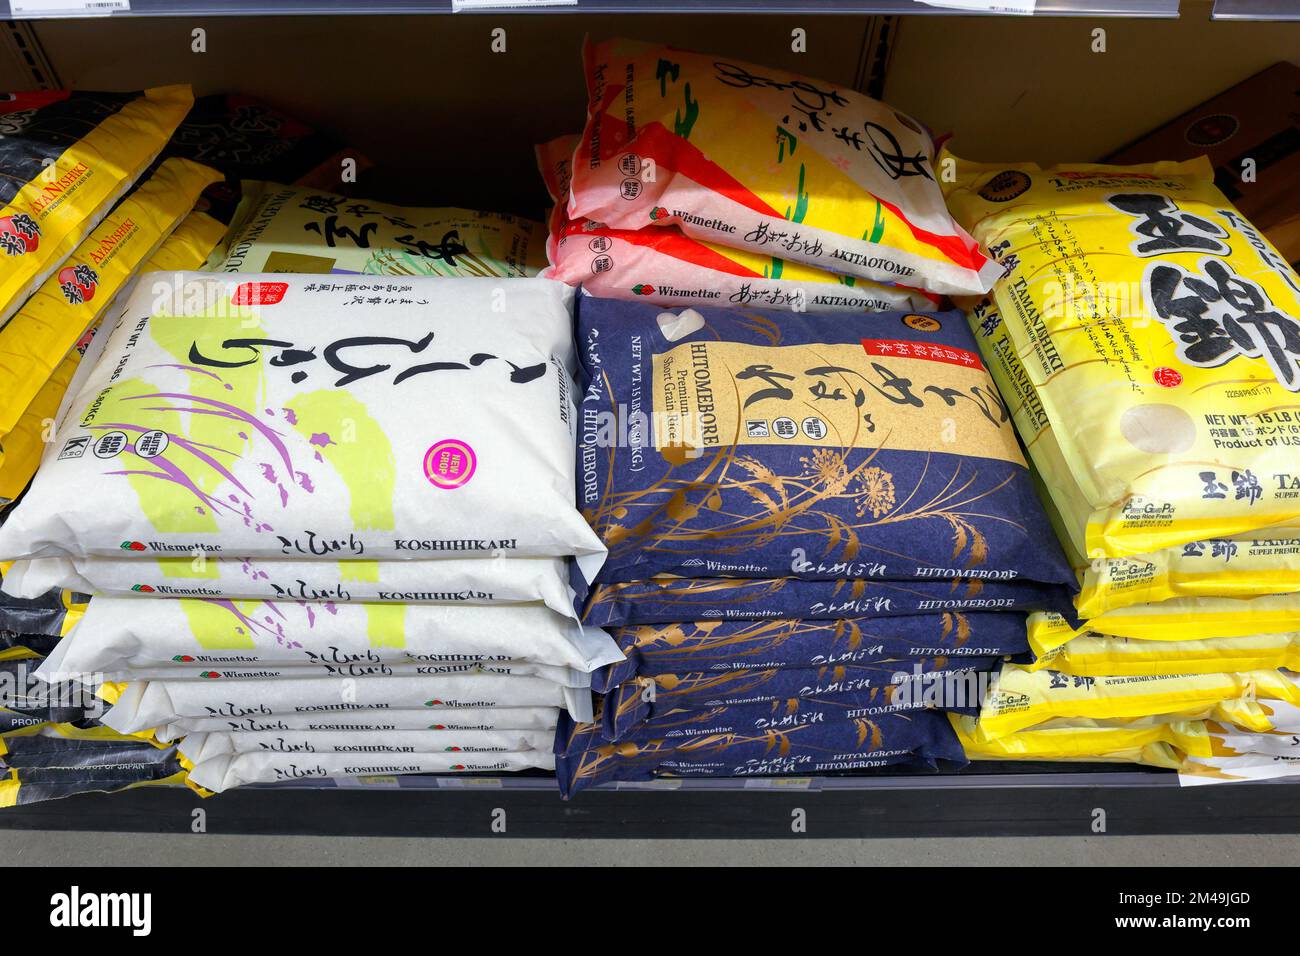 Beutel mit japanischem Kurzkornreis auf einem Regal im Supermarkt. Die Marken verwenden Variationen des Koshihikari-Kultivars von Oryza sativa Japonica. Stockfoto